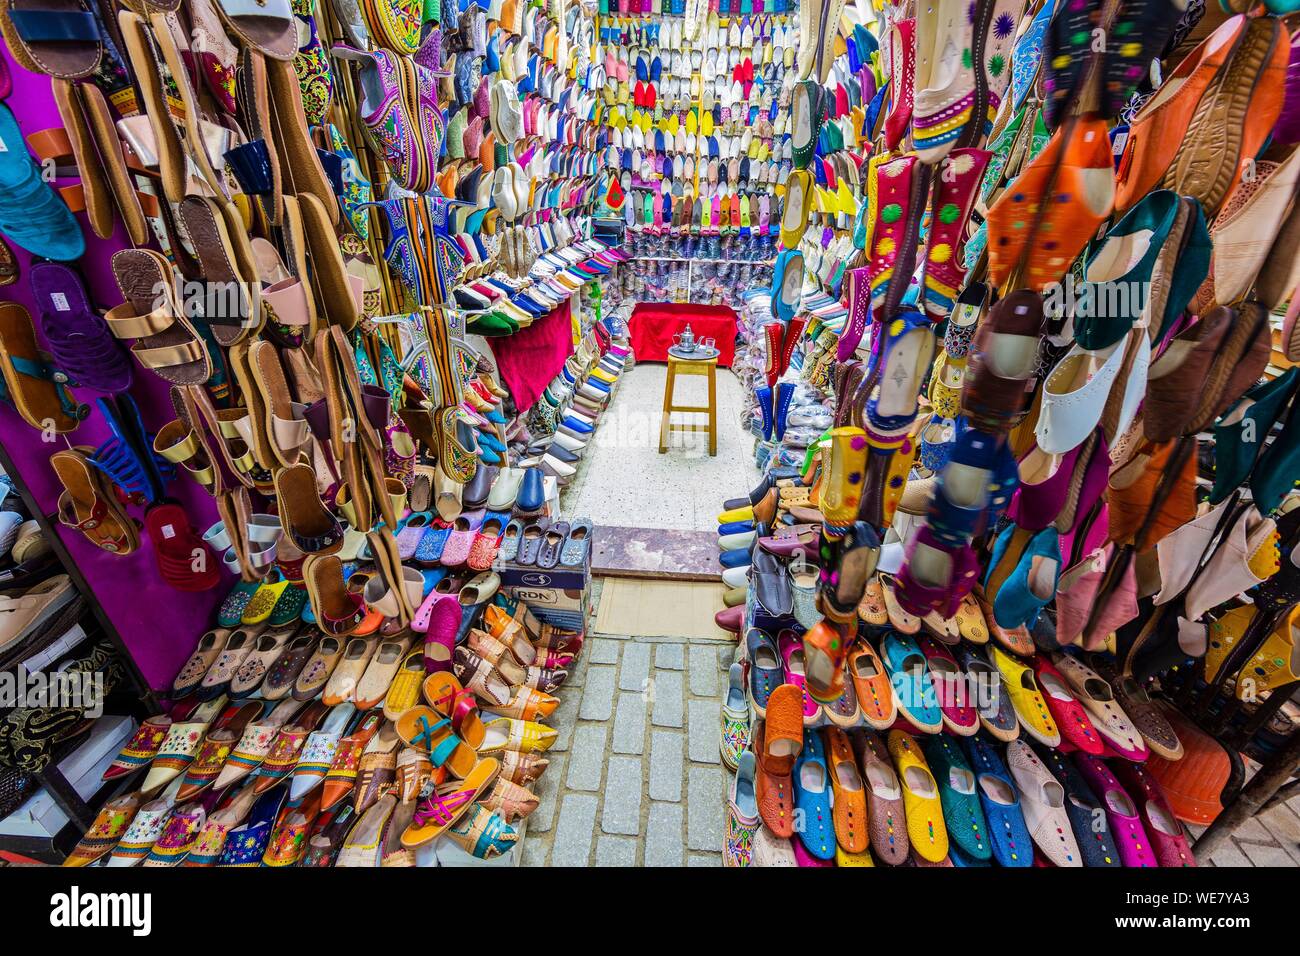 Marokko, Rabat, als Weltkulturerbe von der UNESCO, Medina, Altstadt, der überdachten Souk aufgeführt, traditionelle marokkanische Babouches Schuhe Stockfoto